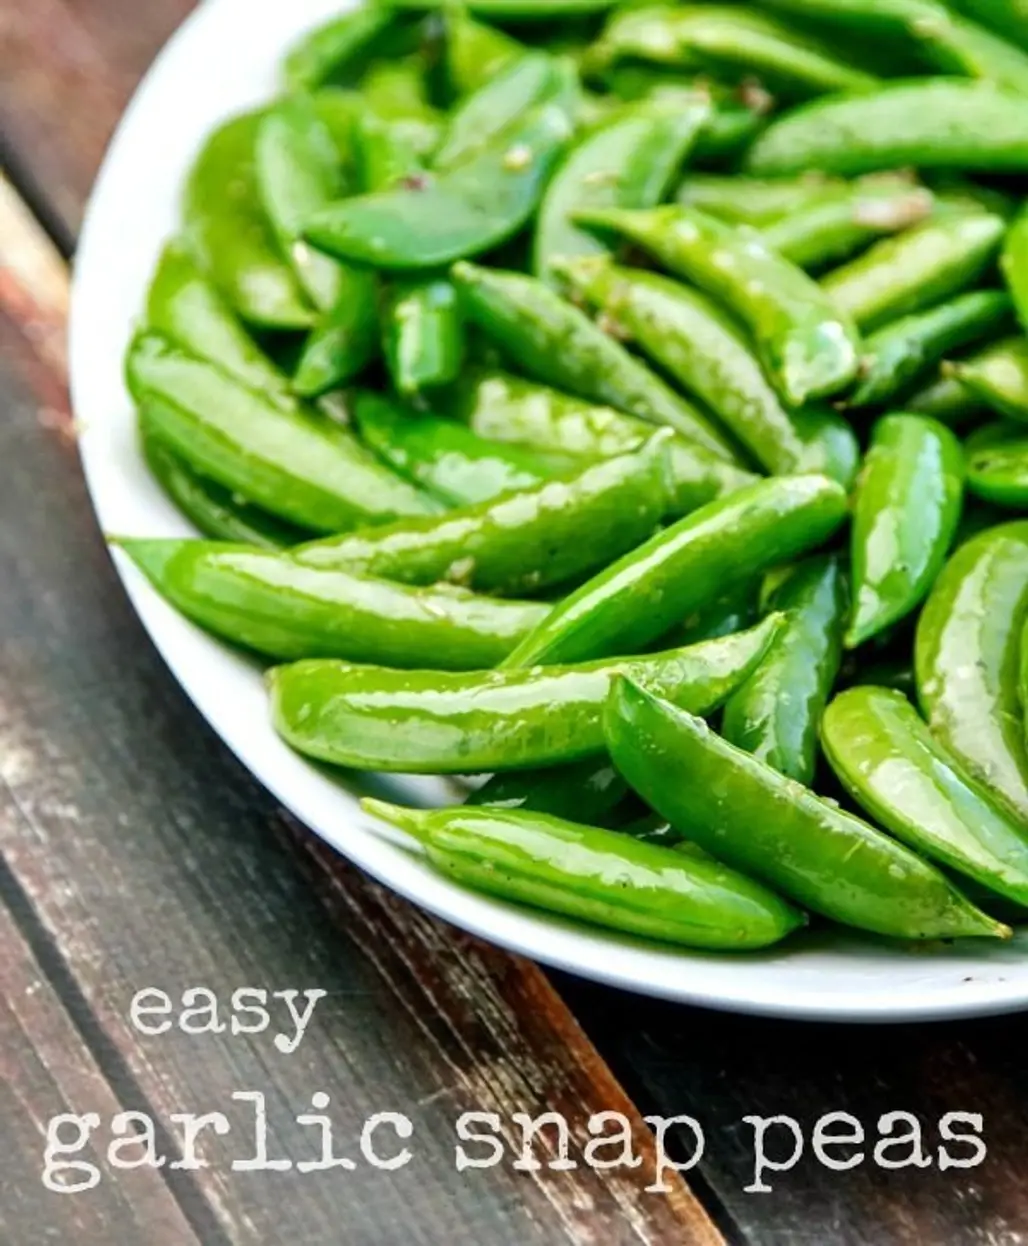 Easy Garlic Snap Peas